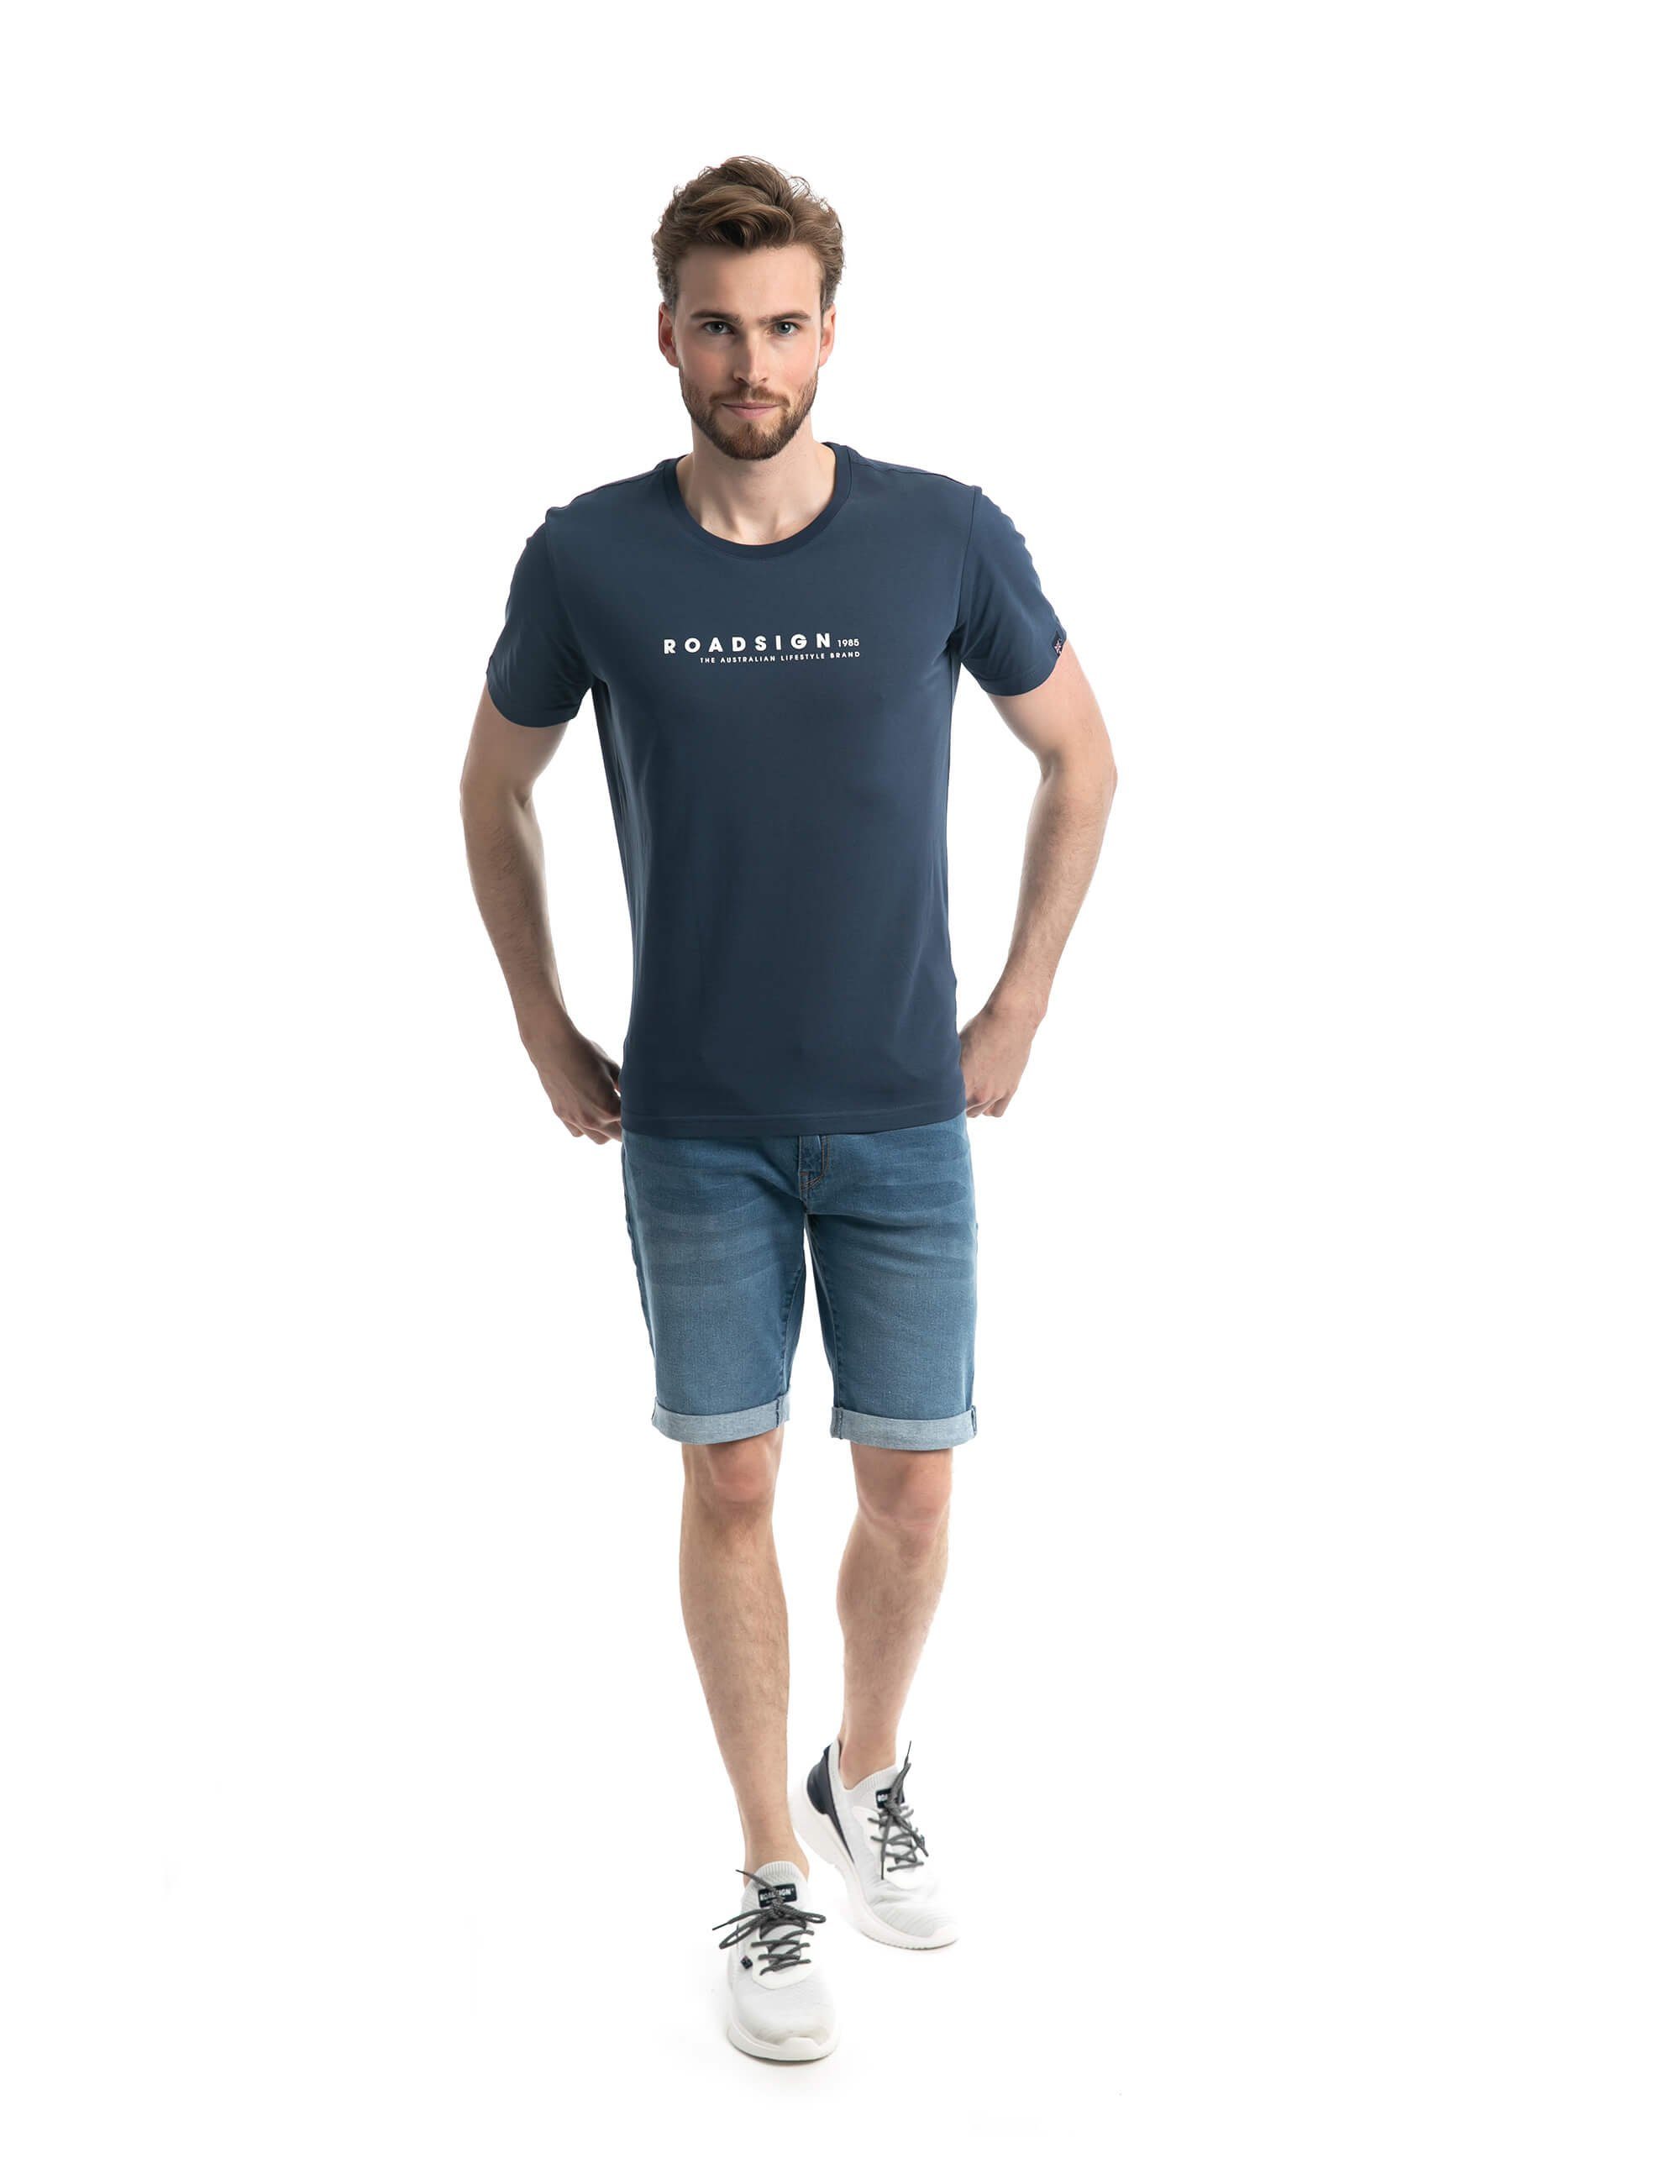 (1-tlg) Roadsign australia mit % Logo-Aufdruck, & Navy Lifestyle ROADSIGN BCI-Baumwolle T-Shirt Rundhalsausschnitt 100